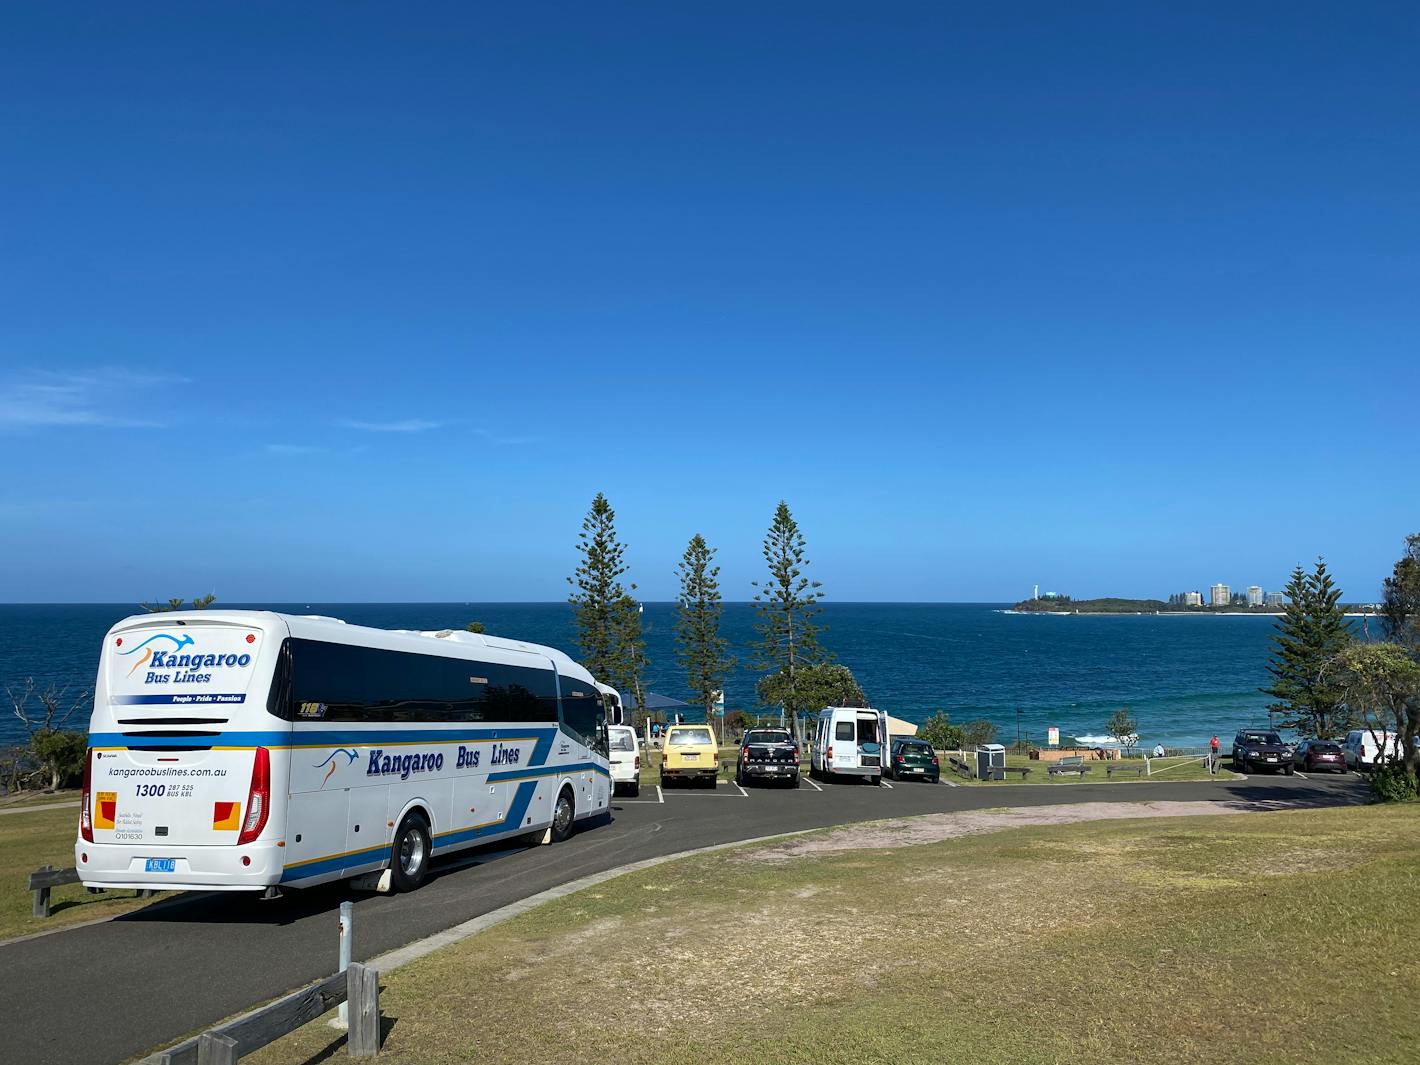 kangaroo bus lines day trips